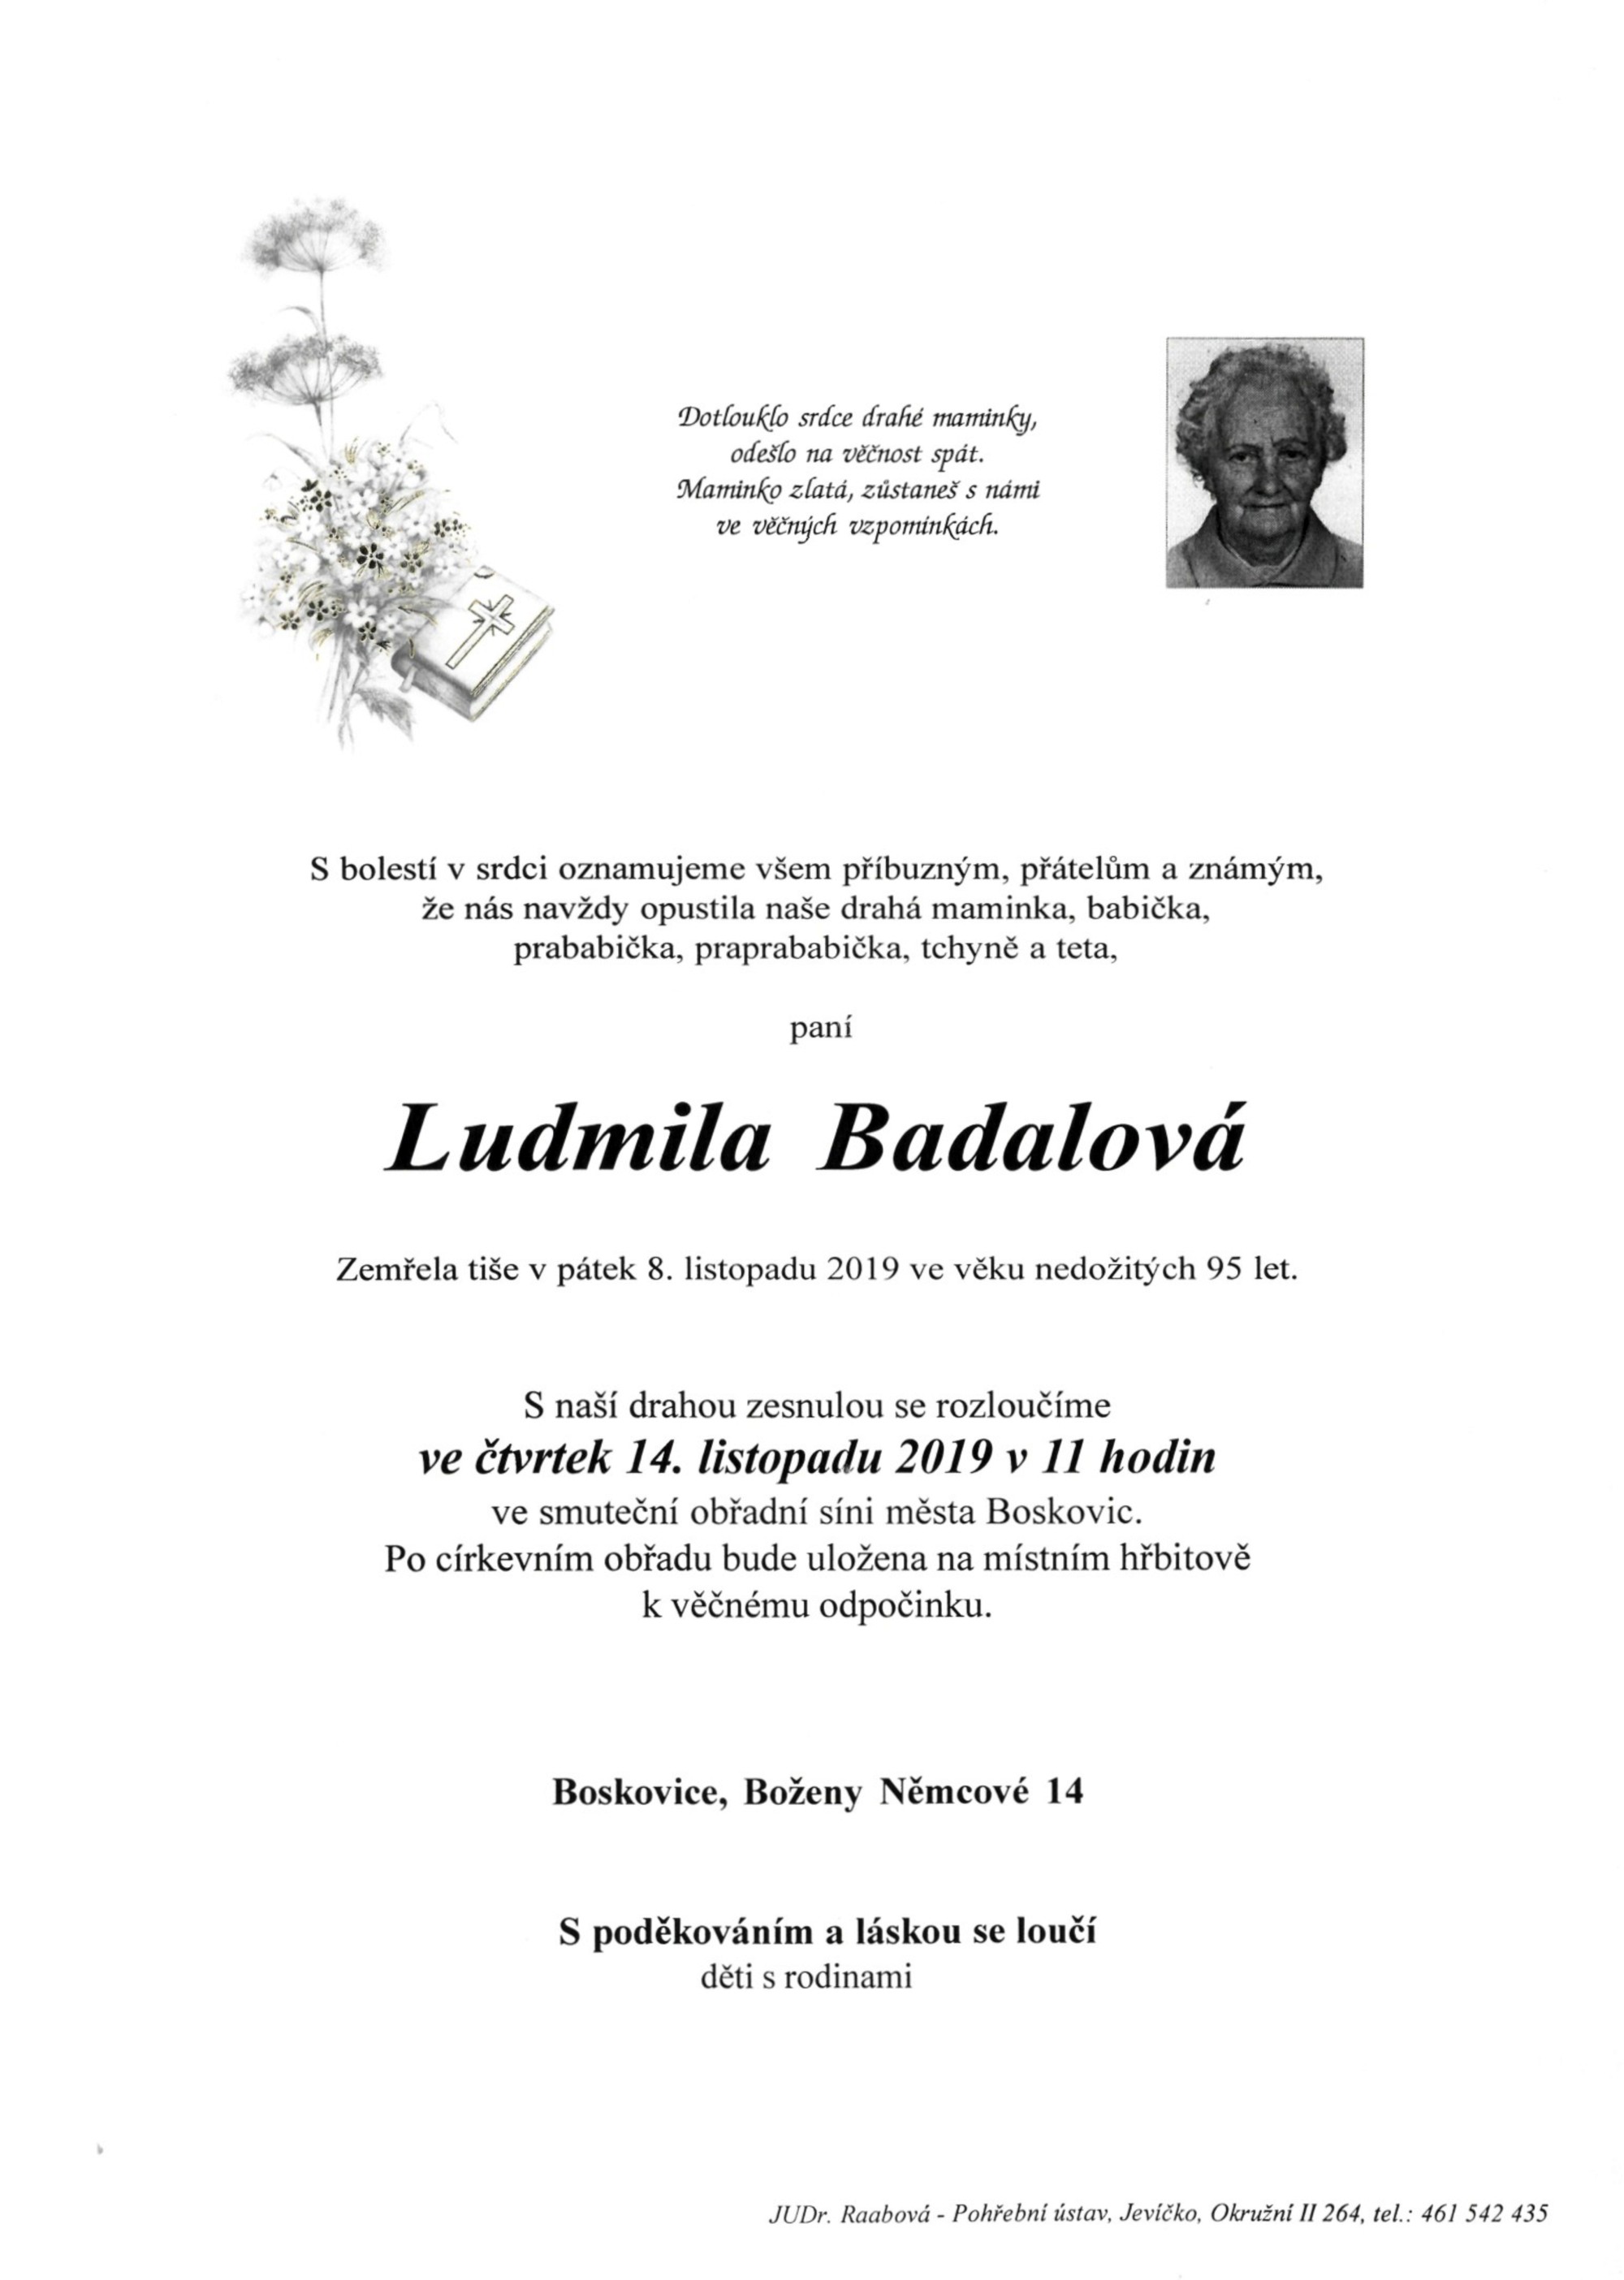 Ludmila Badalová